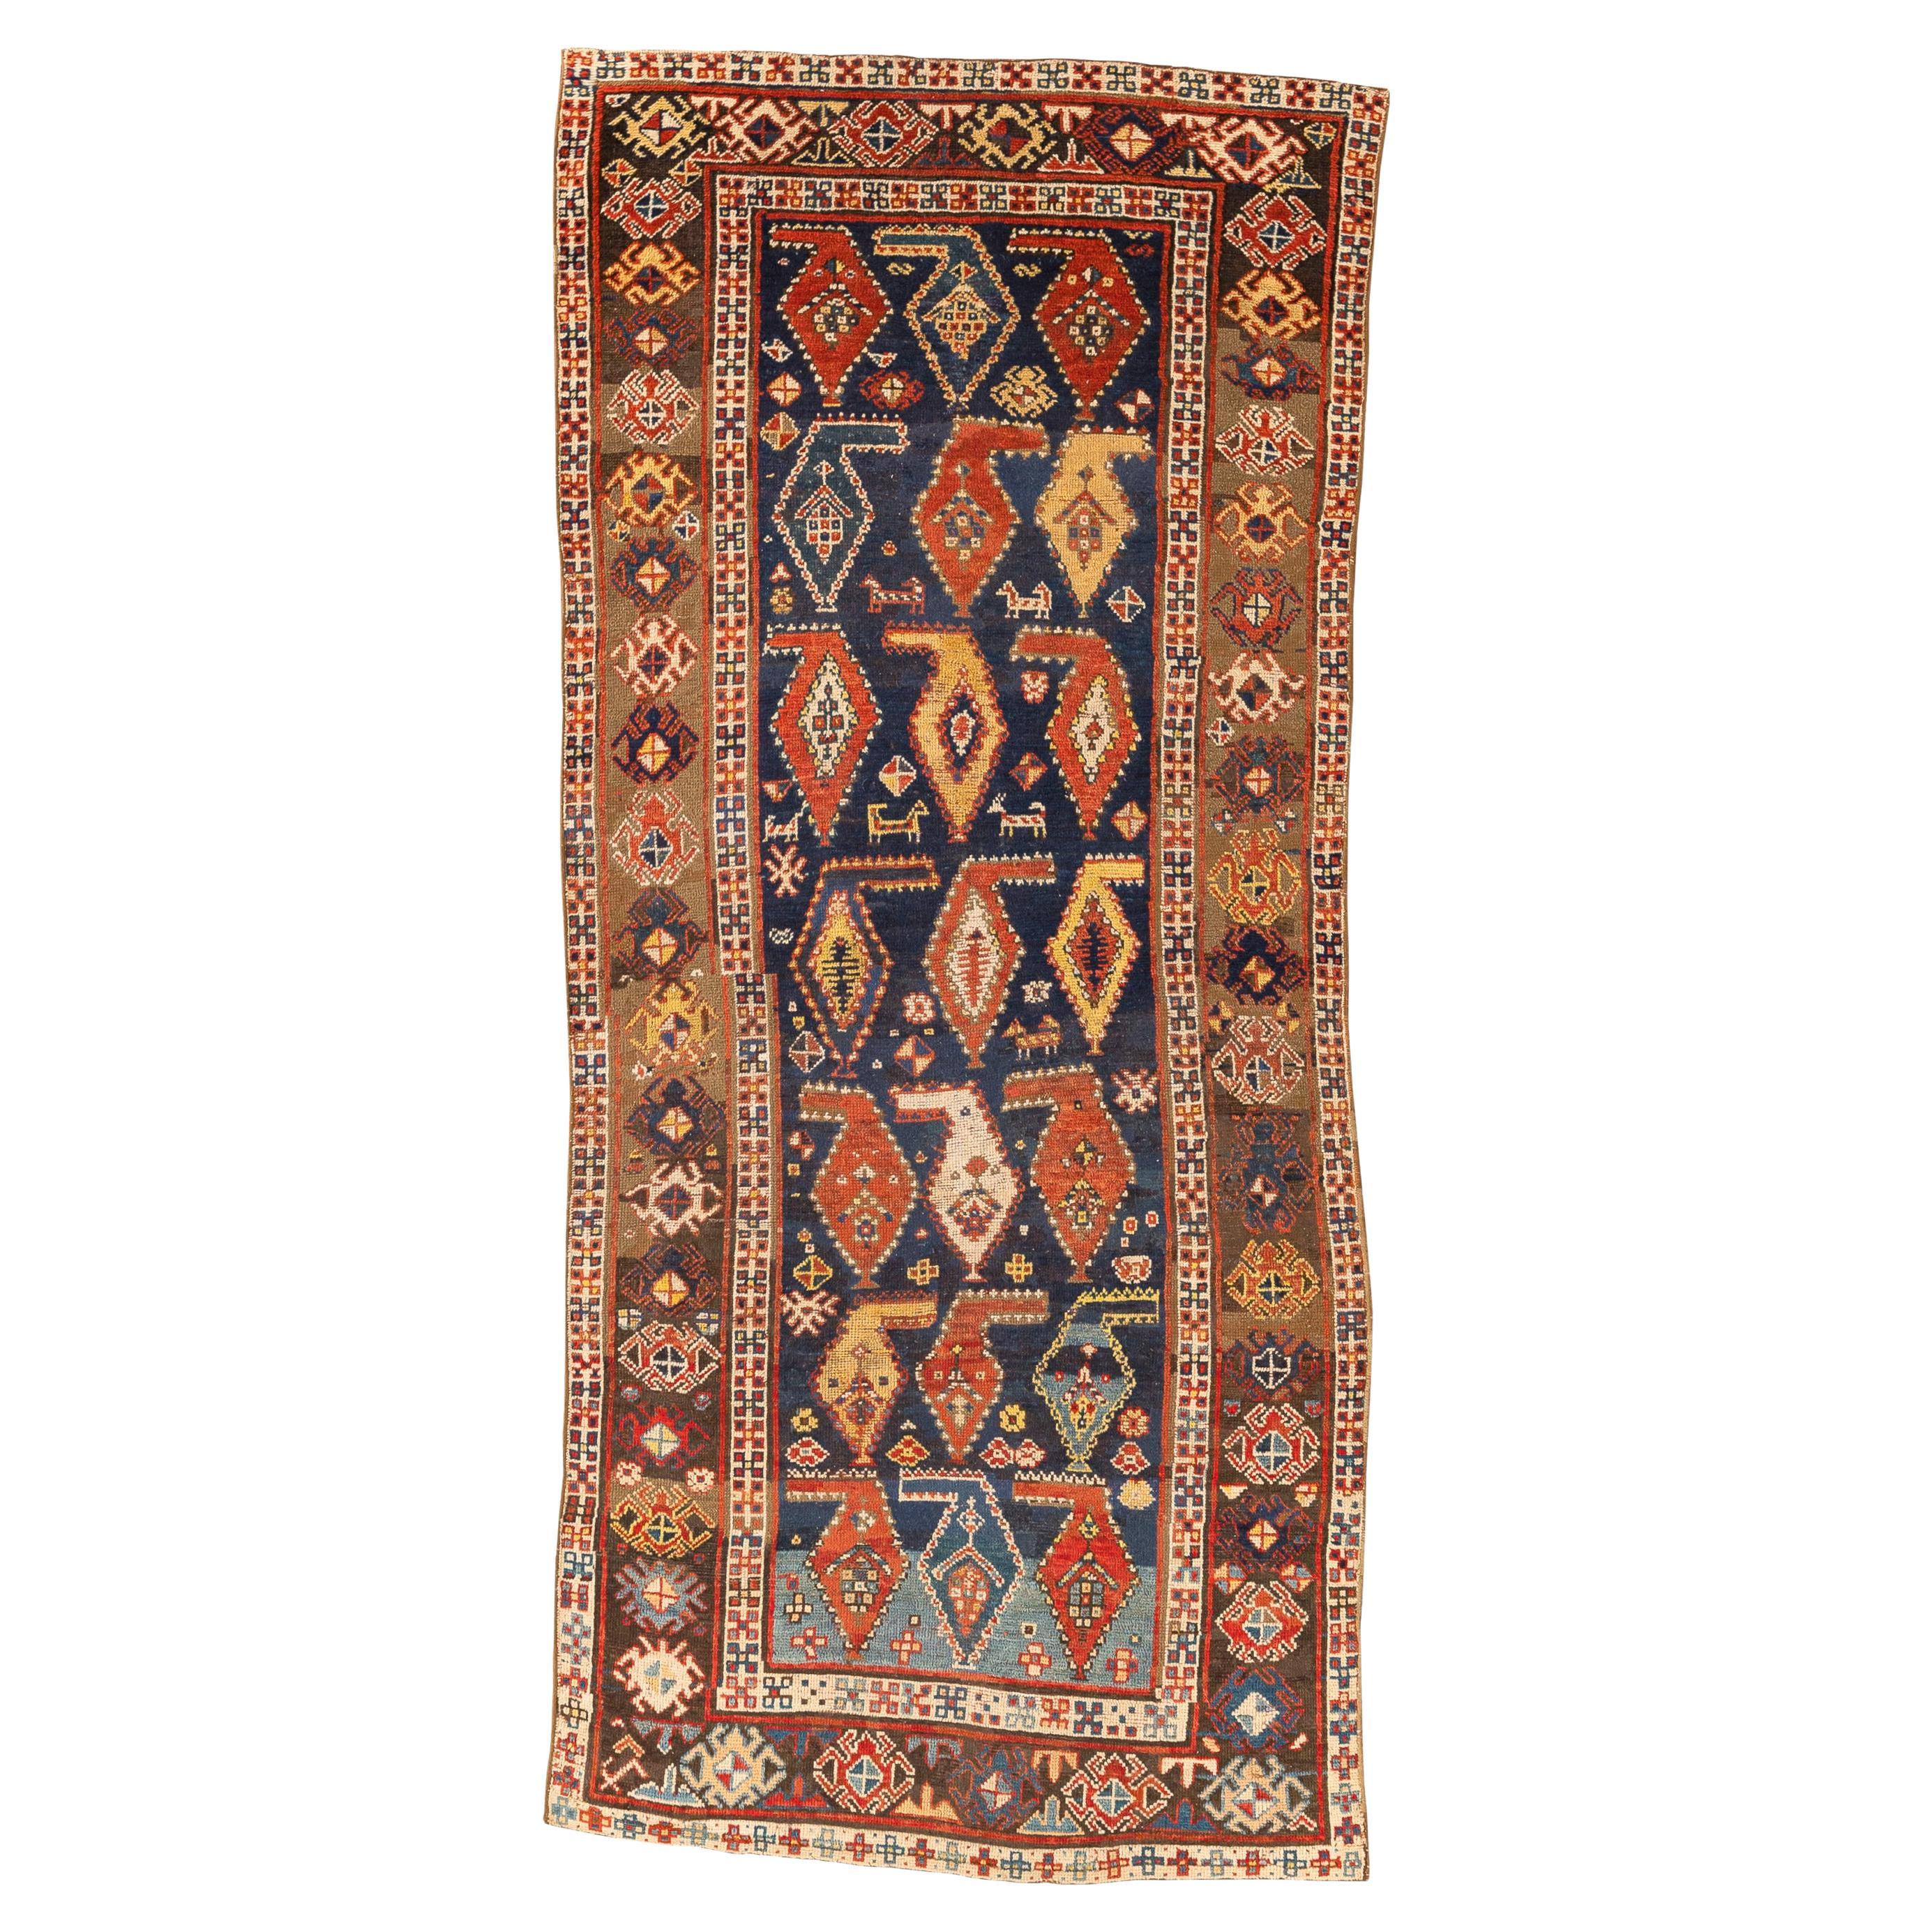 Karabagh - Südkaukasus

Dies ist ein antiker Teppich, der reich an geometrischen Figuren ist. Das dunkelblaue Mittelfeld wird von drei horizontalen Botehs-Reihen und sieben vertikalen Spalten dominiert. Die Botehs sind oben an einem horizontalen